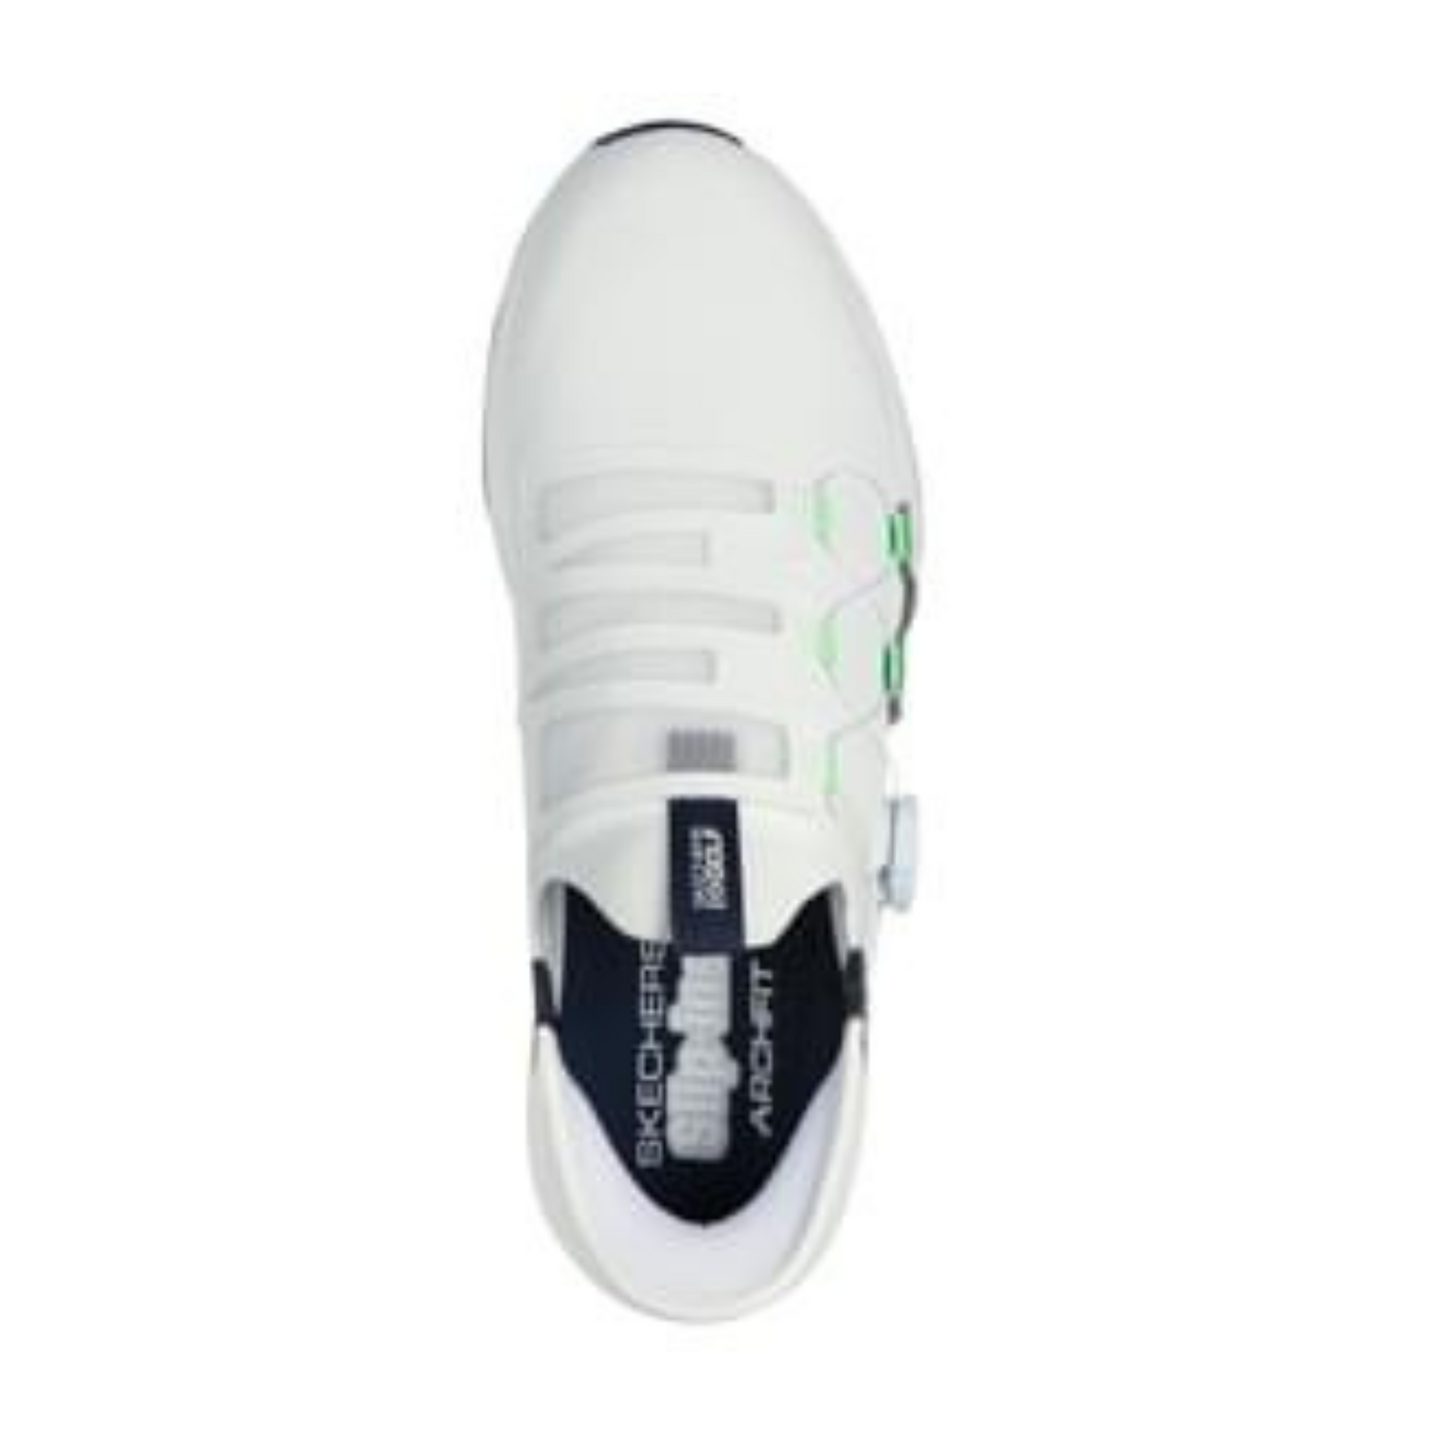 Skechers Go Golf Elite 5 Slip In Spikeless Golf Shoes 214066 White Navy + Free Gift   